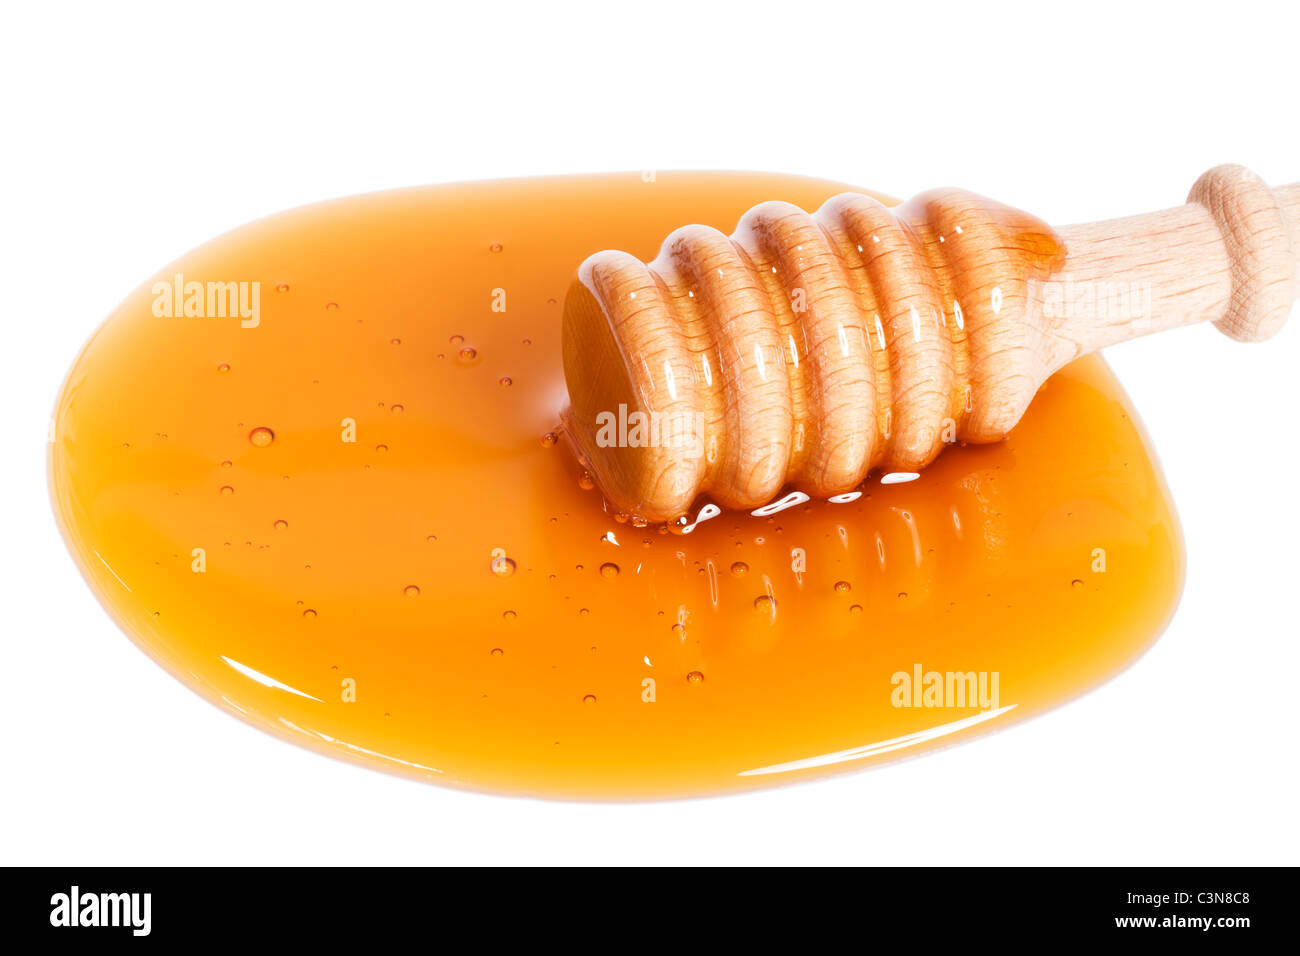 Balancier de miel un peu haut dans une flaque de miel sur fond blanc Banque D'Images